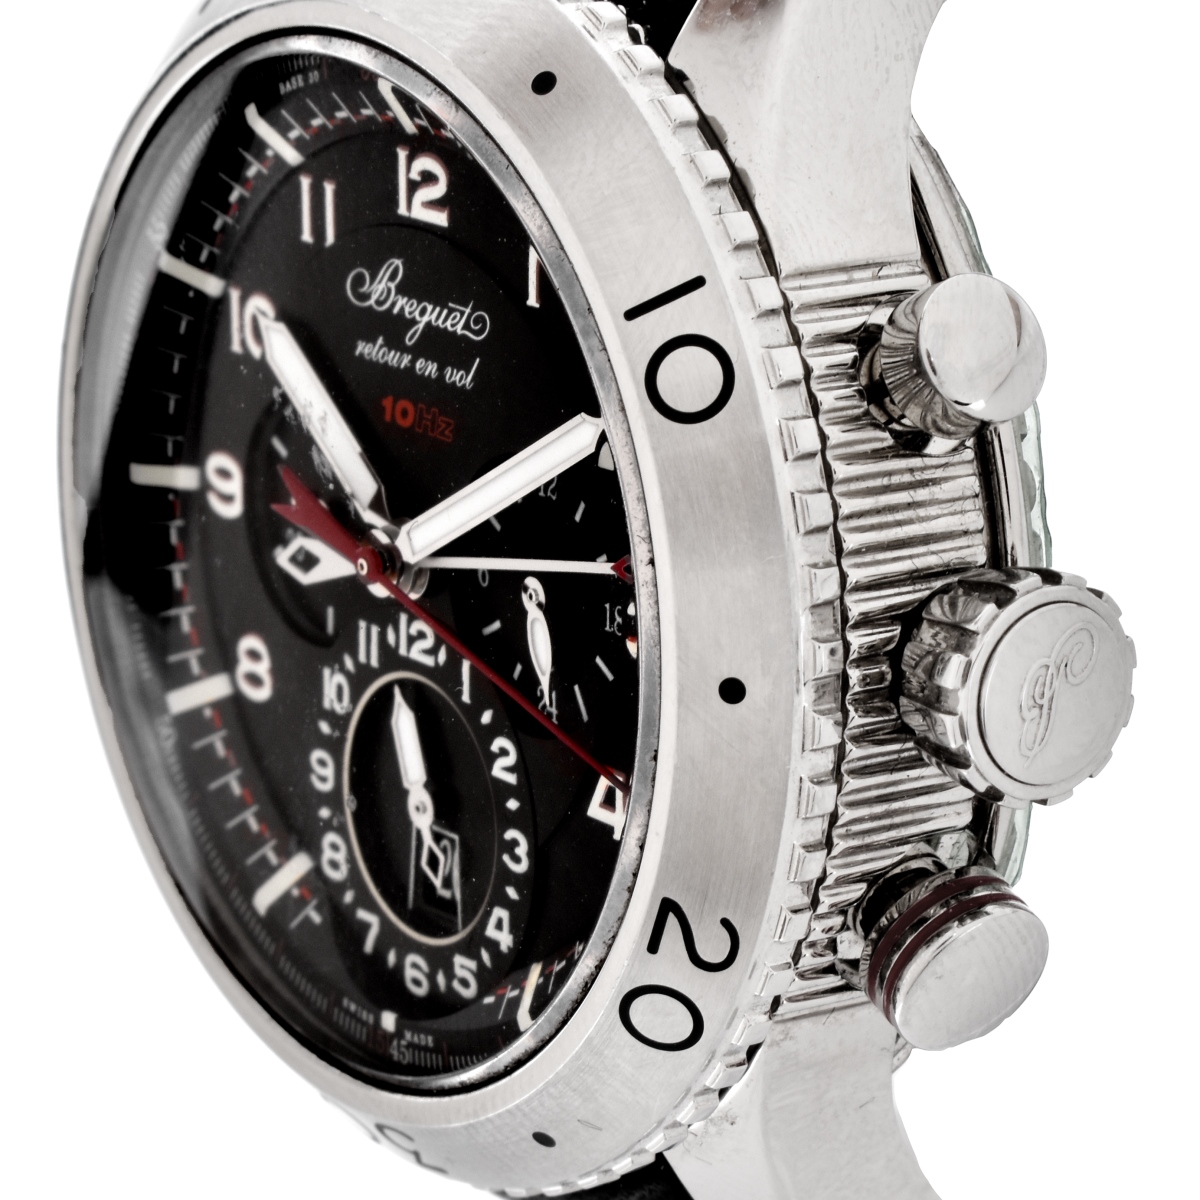 Men's Breguet Type XXII Watch